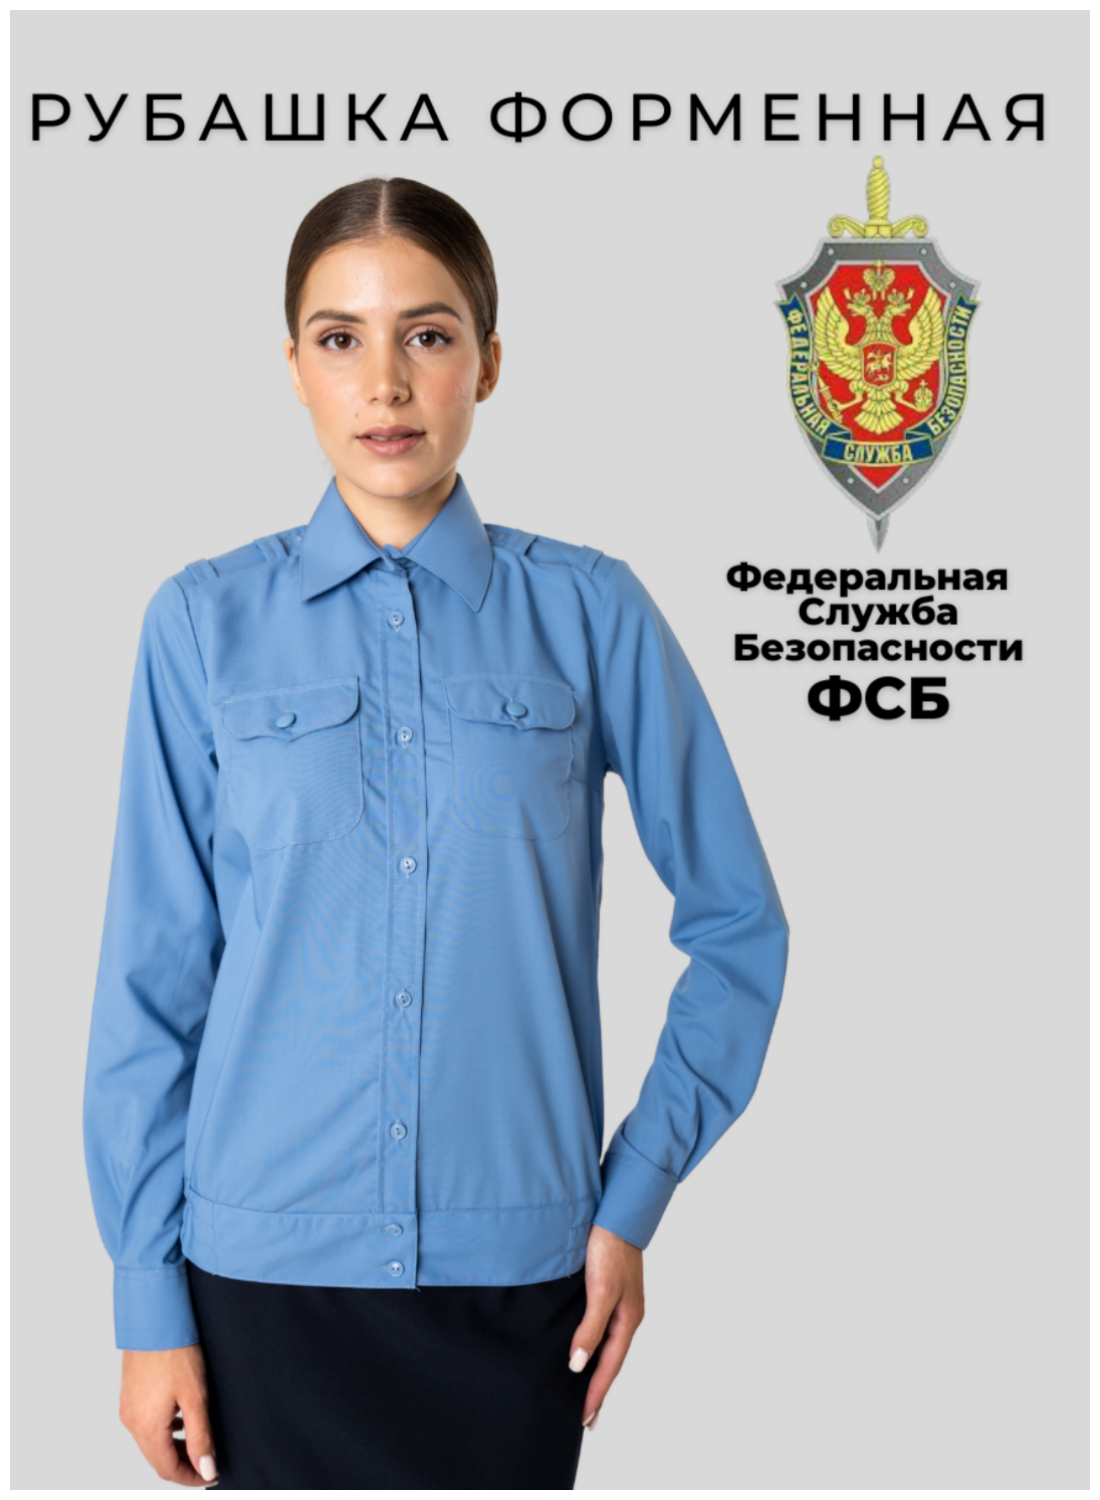 Спец форма Рубашка ФСБ женская повседневная длинный рукав(размер 44 рост 171 см)